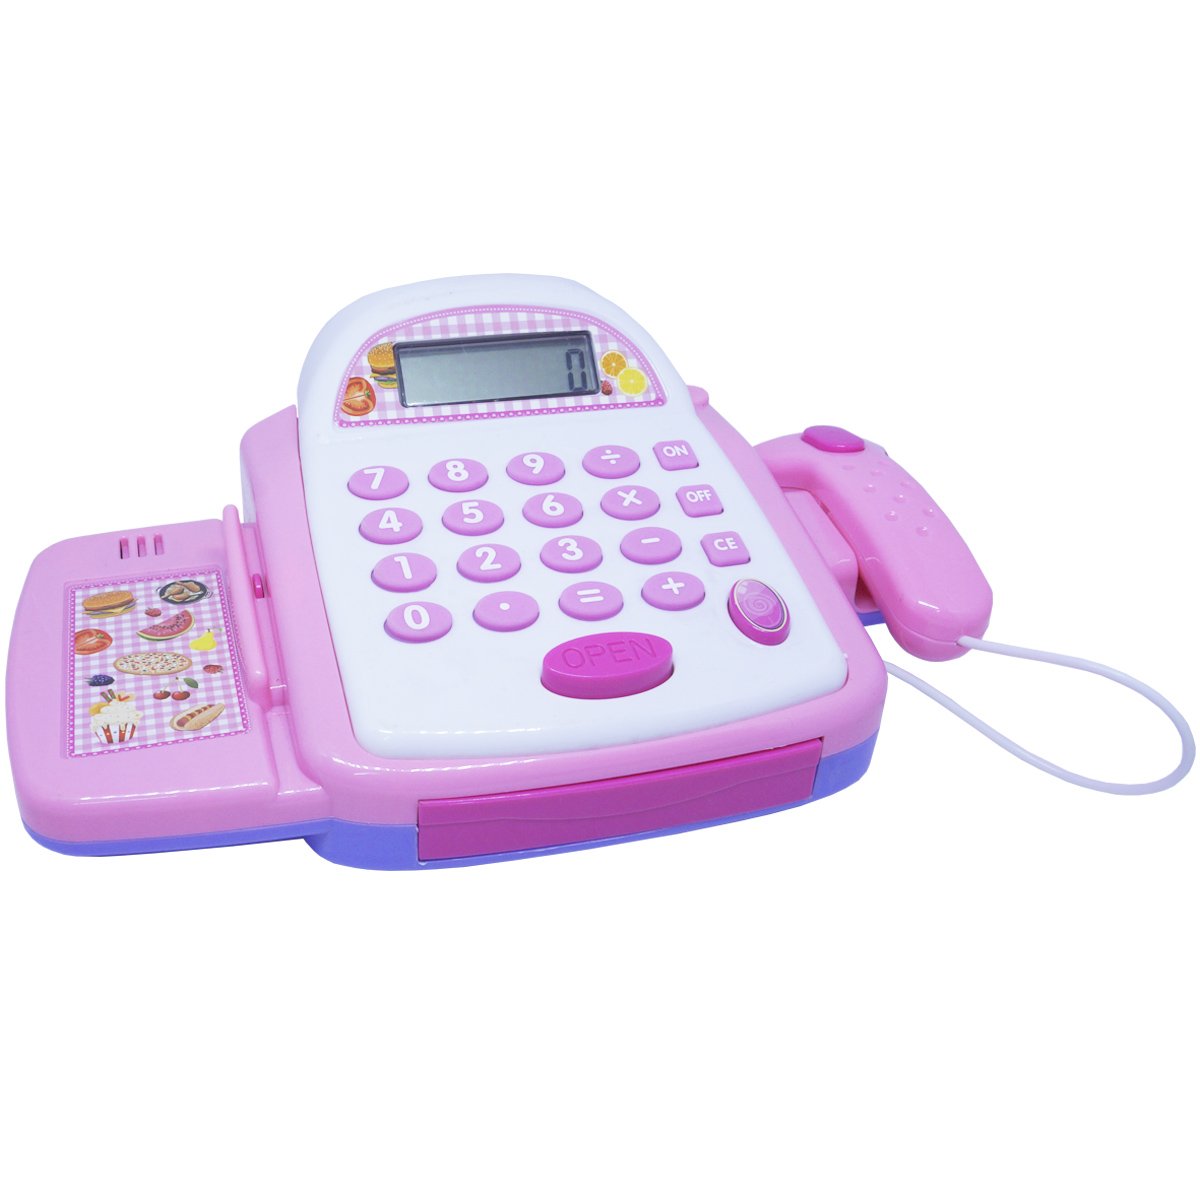 Caixa Registradora Infantil Brinquedo Calculadora Mercadinho com Luz e Som Importway BW042RS Rosa - 1